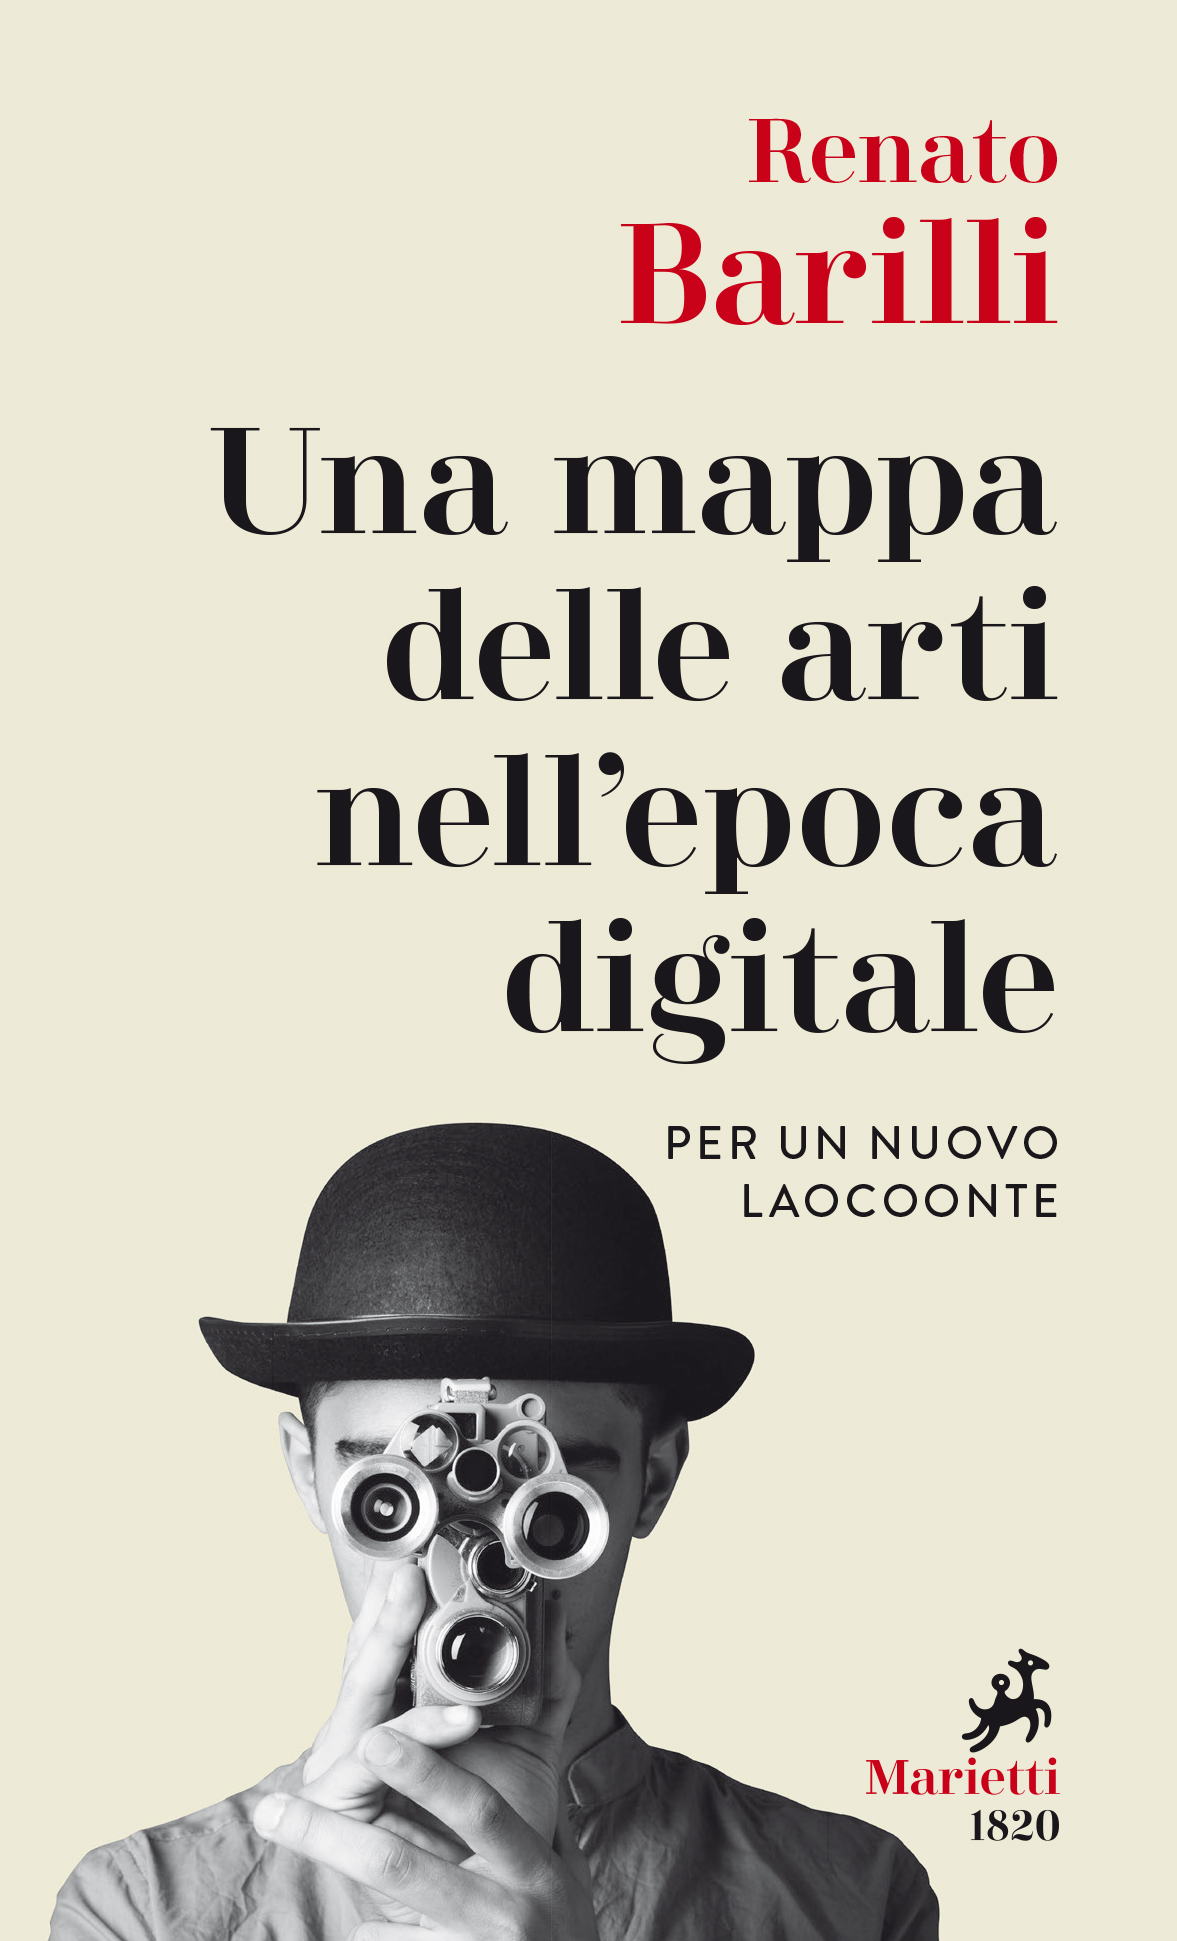 Renato Barilli – Una mappa delle arti nell'epoca digitale. Per un nuovo Laocoonte (Marietti, Bologna 2020)